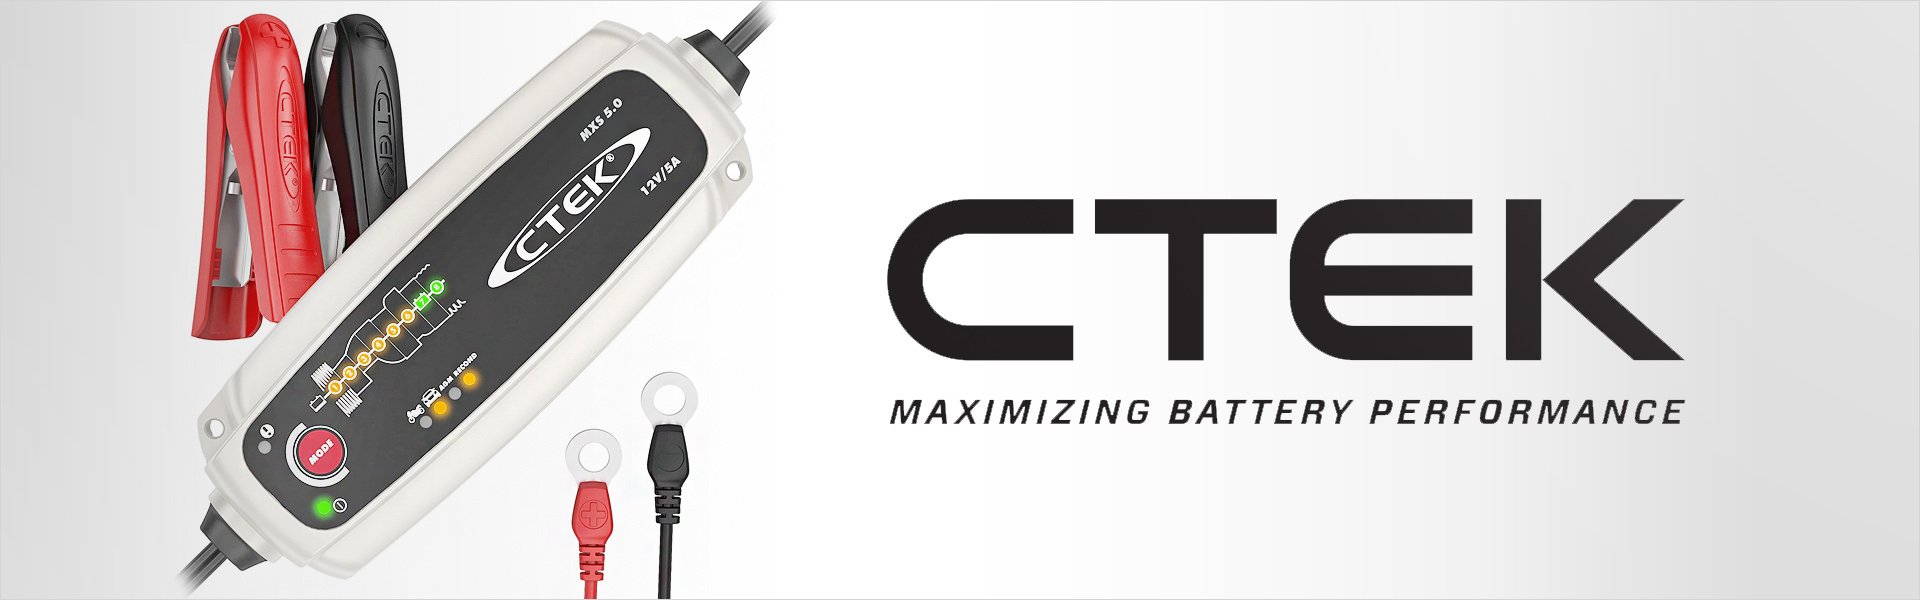 Дополнительный кабель с индикатором CTEK M8 56-382 Ctek®